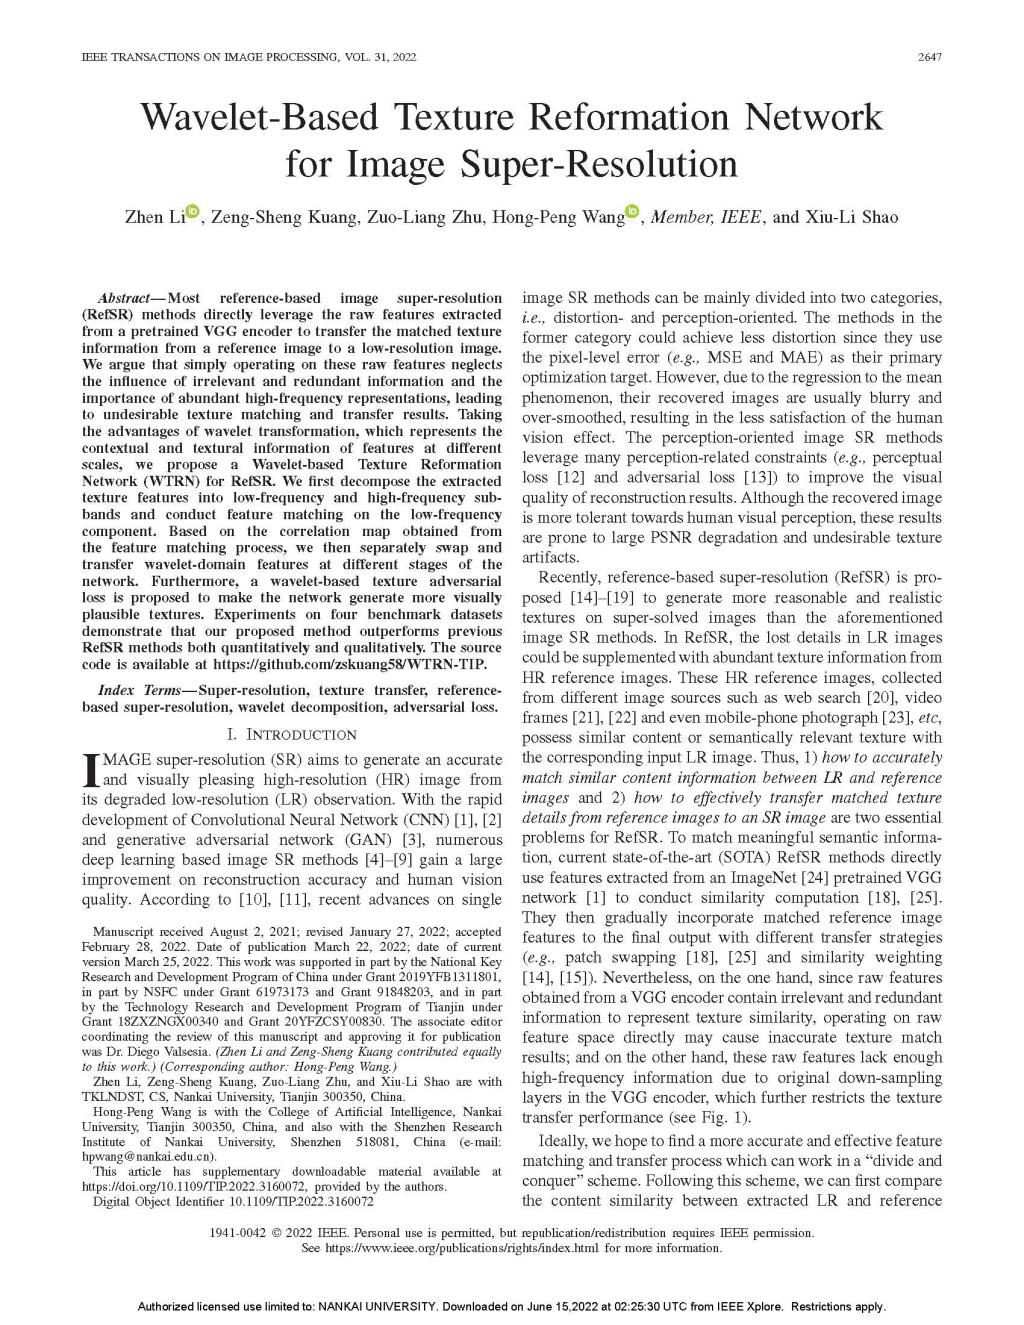 王鸿鹏课题组在IEEE Transactions on Image Processing(SCI 1区)期刊发表论文"Wavelet-Based Texture Reformation Network for Image Super-Resolution"